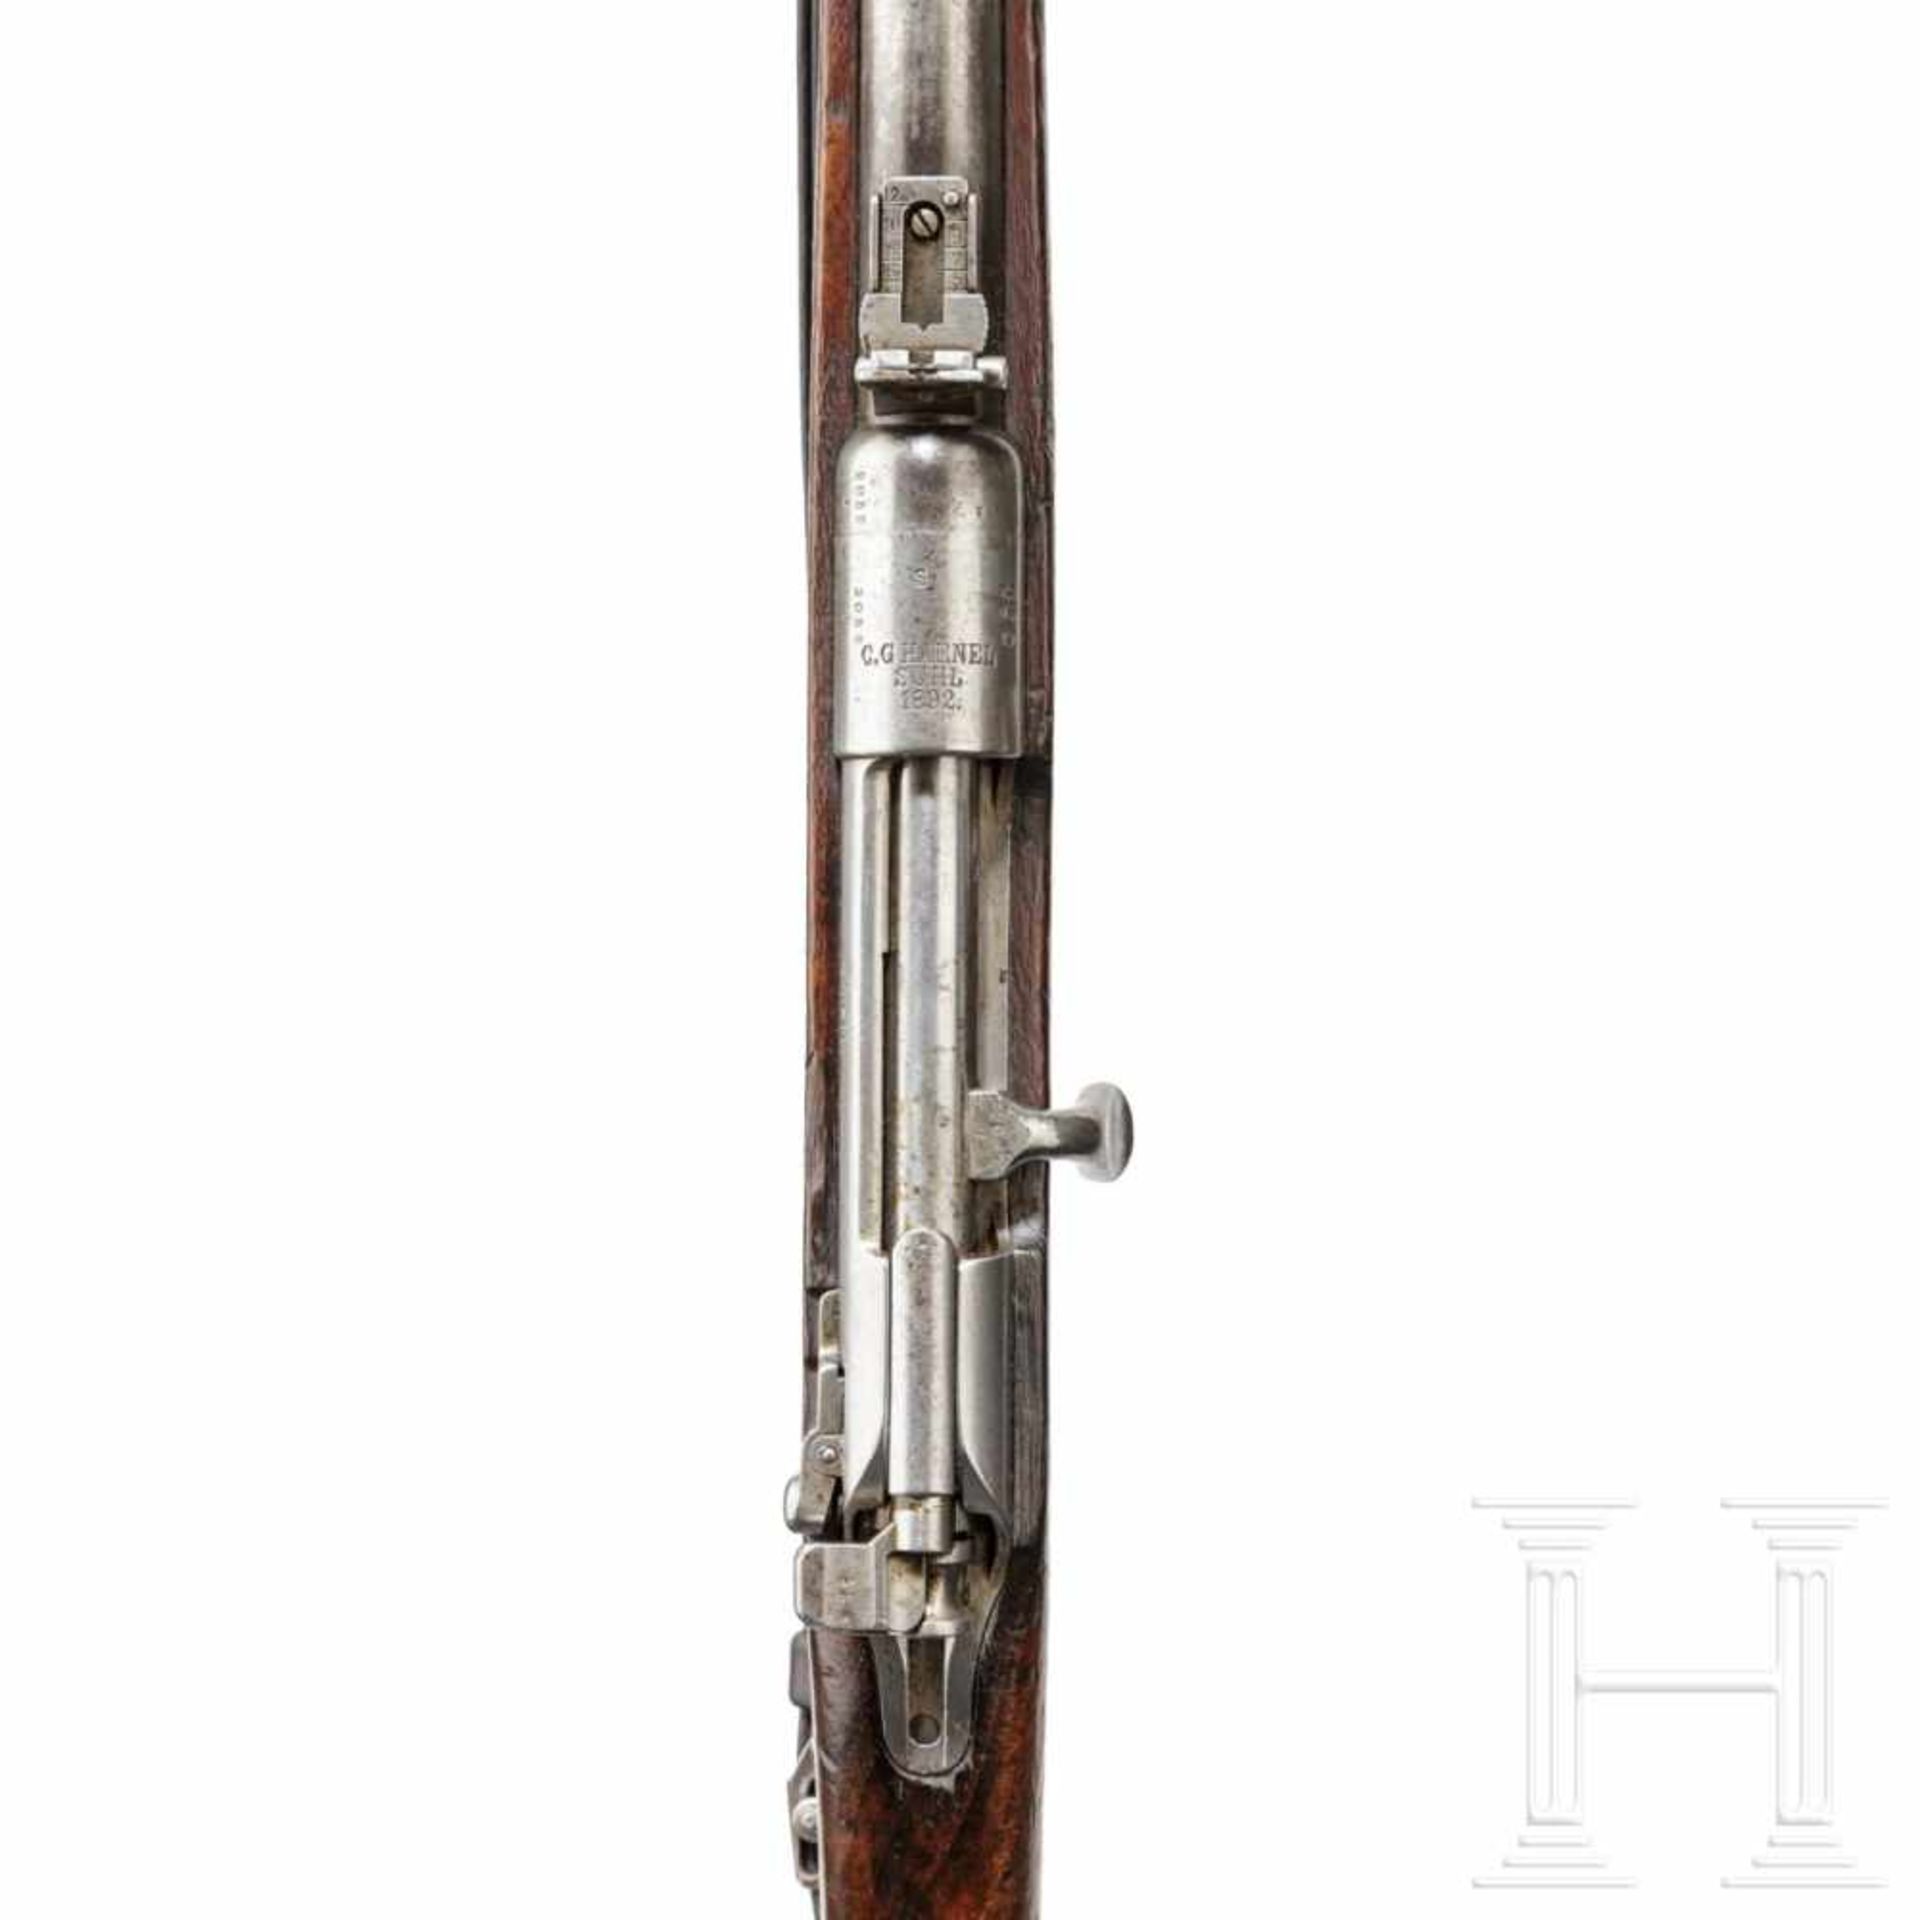 A carbine 88 by C.G. Haenel in Suhl, 1892Kal. 8x57 IS, Nr. 2052 i, nummerngleich inkl. Schrauben. - Bild 3 aus 3